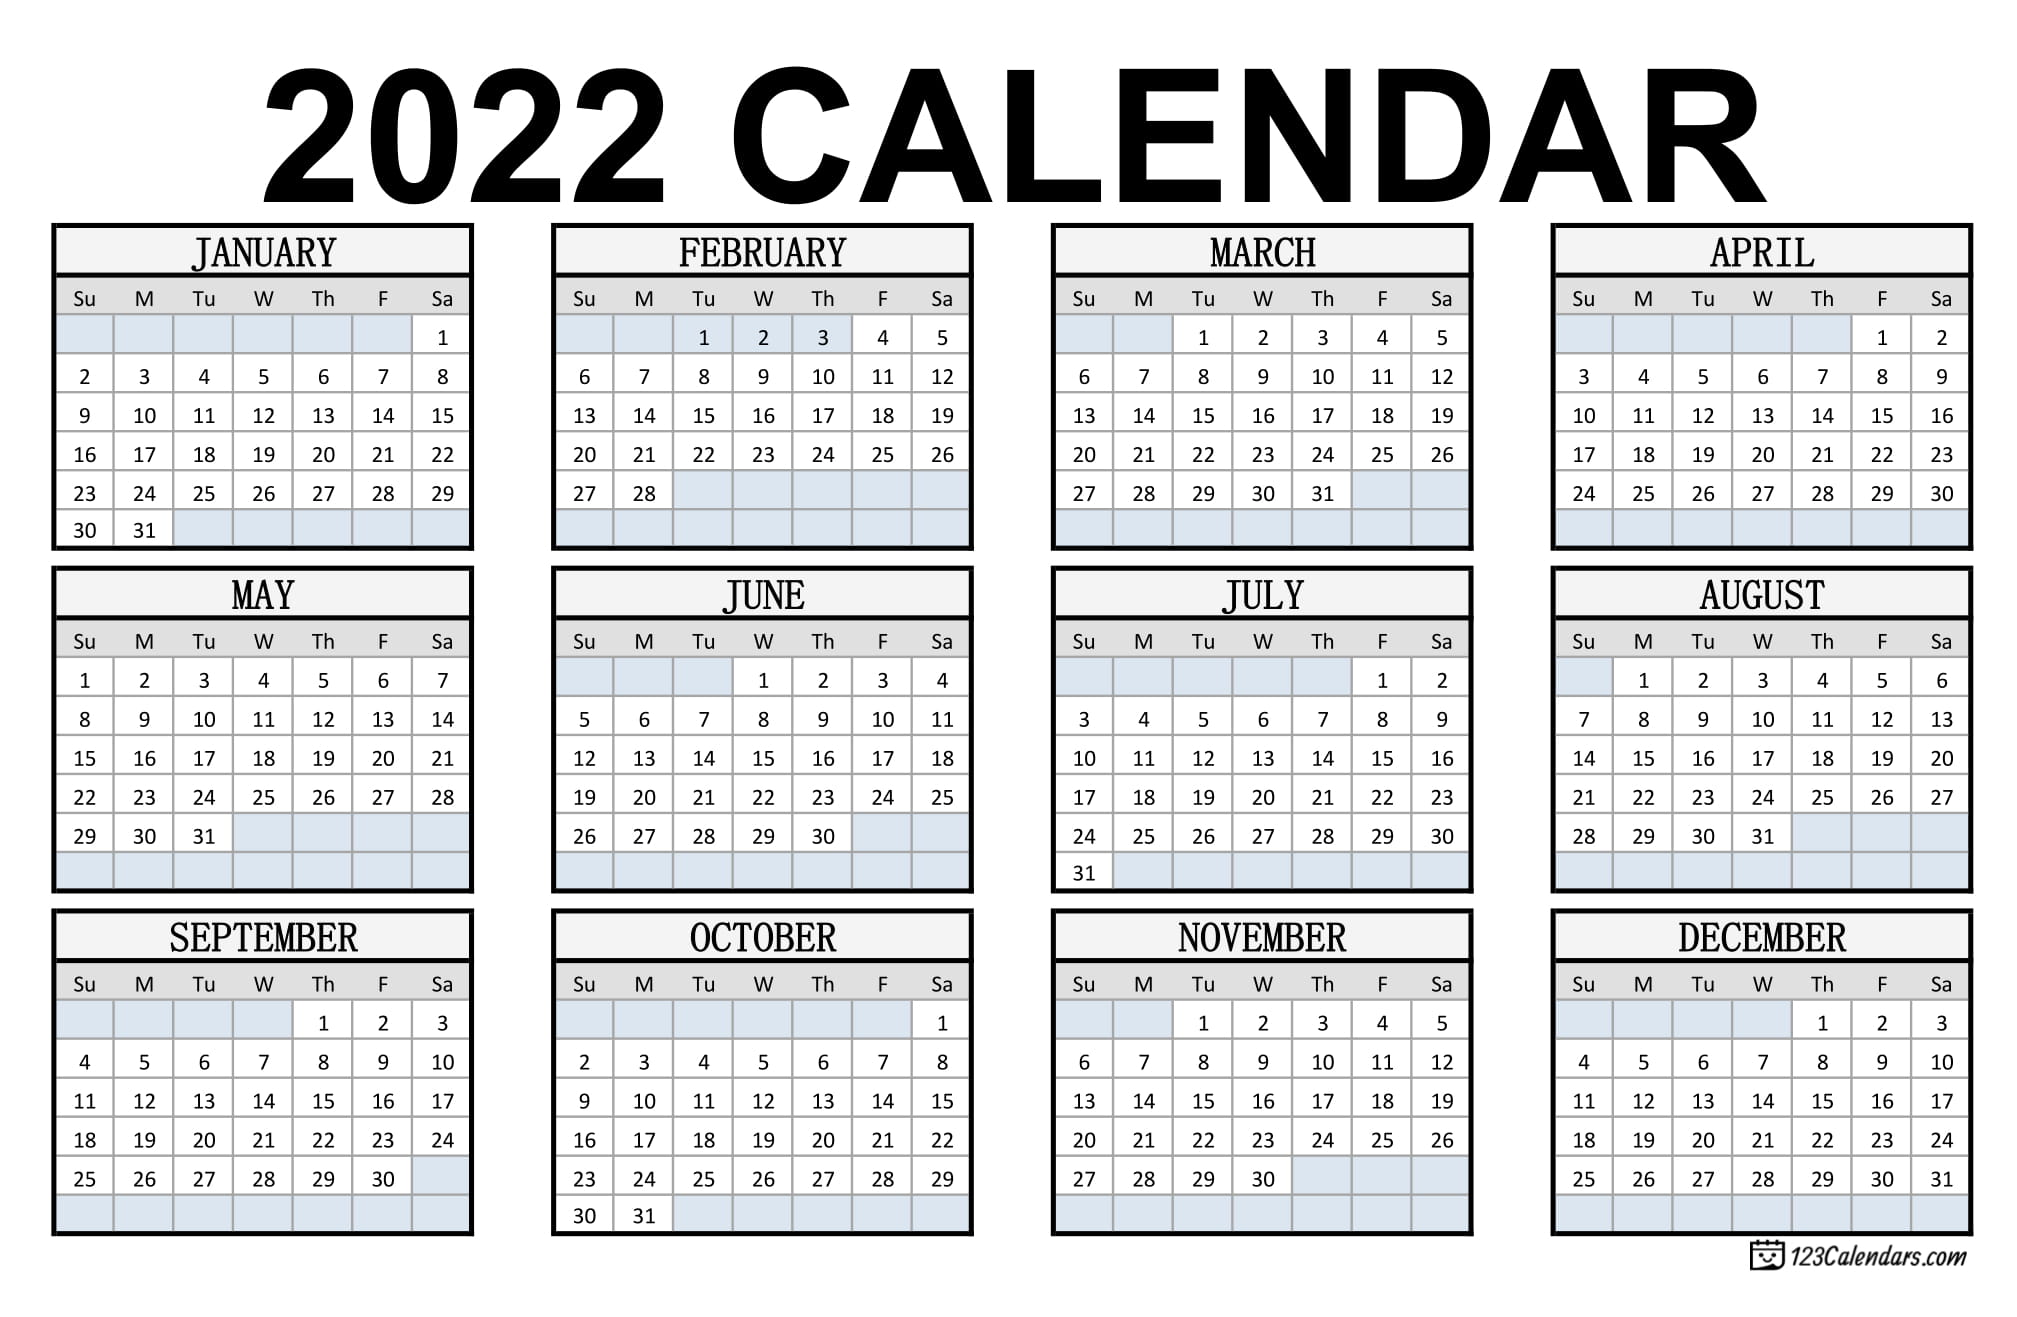 Printable Calendar 2022 Pdf Year 2022 Calendar Templates | 123Calendars.com